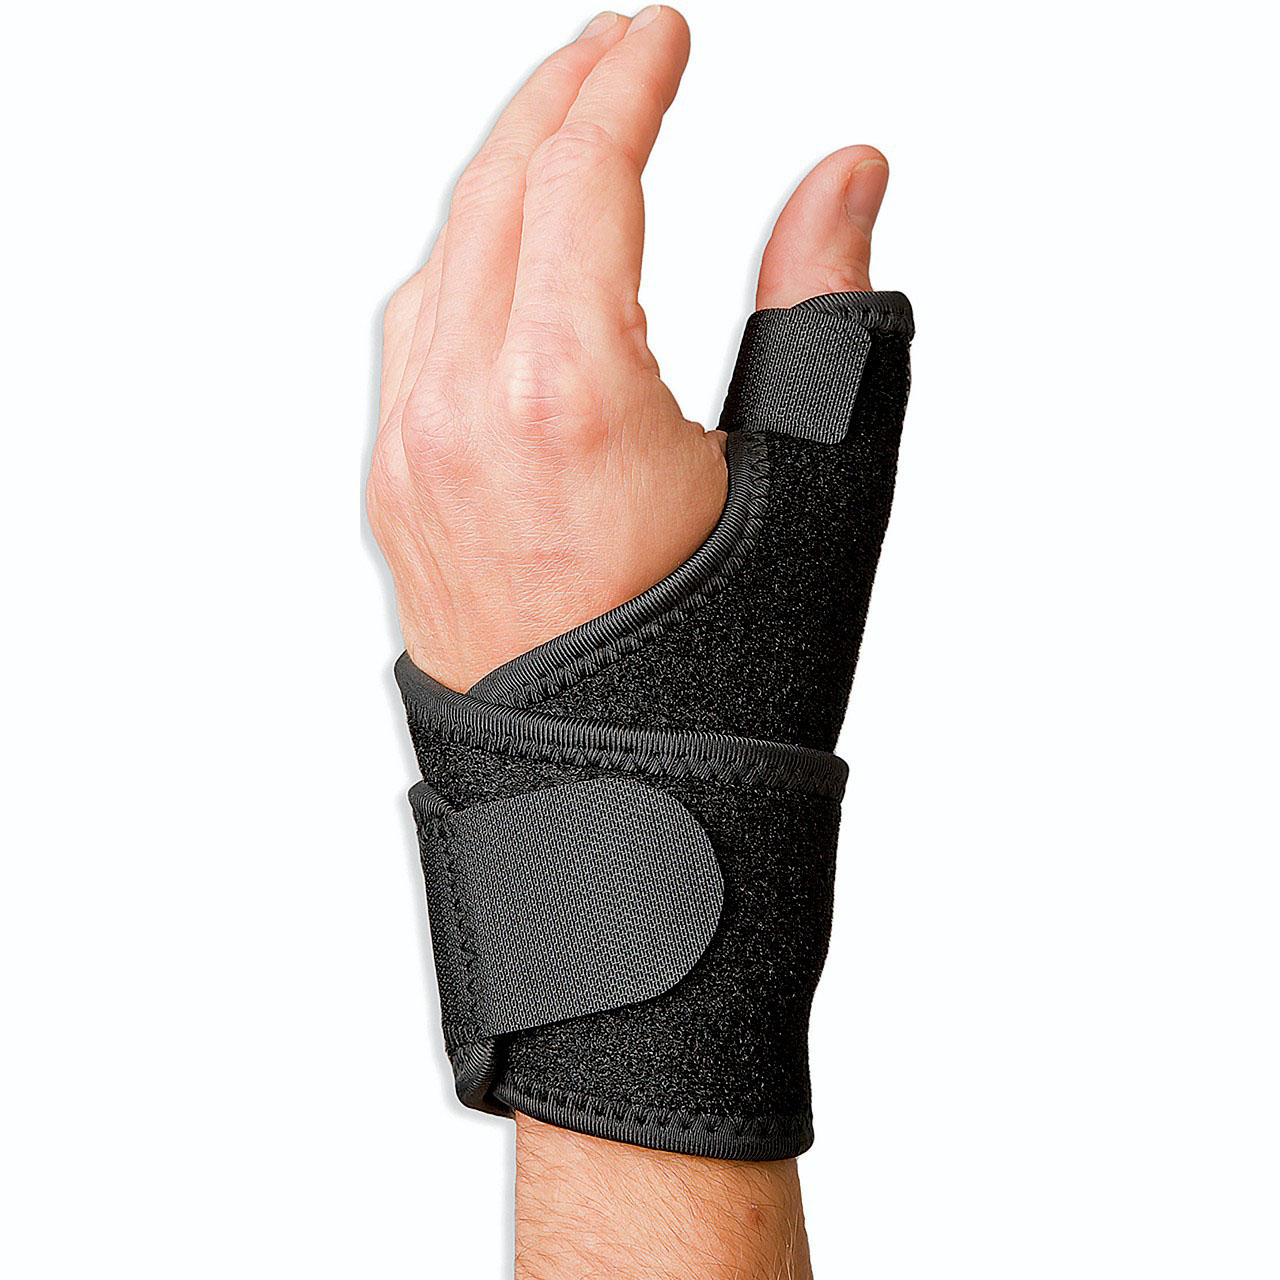 Adjustable Wrist and Thumb Brace